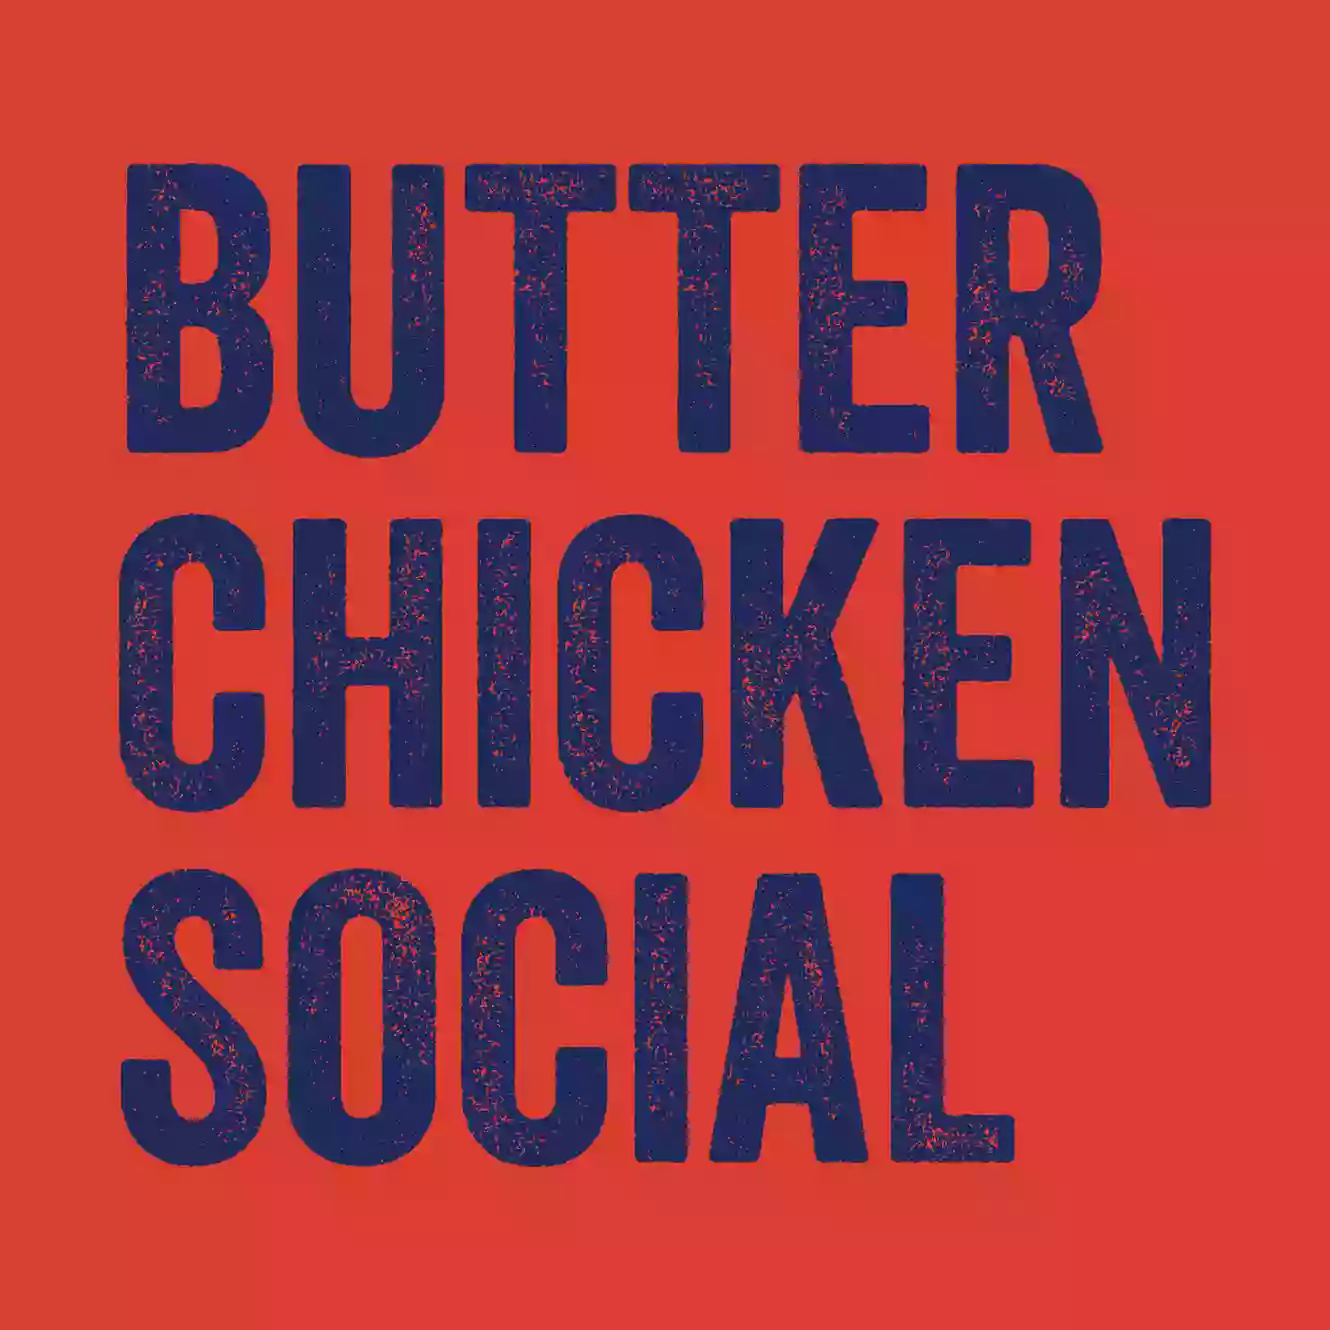 Butter Chicken Social